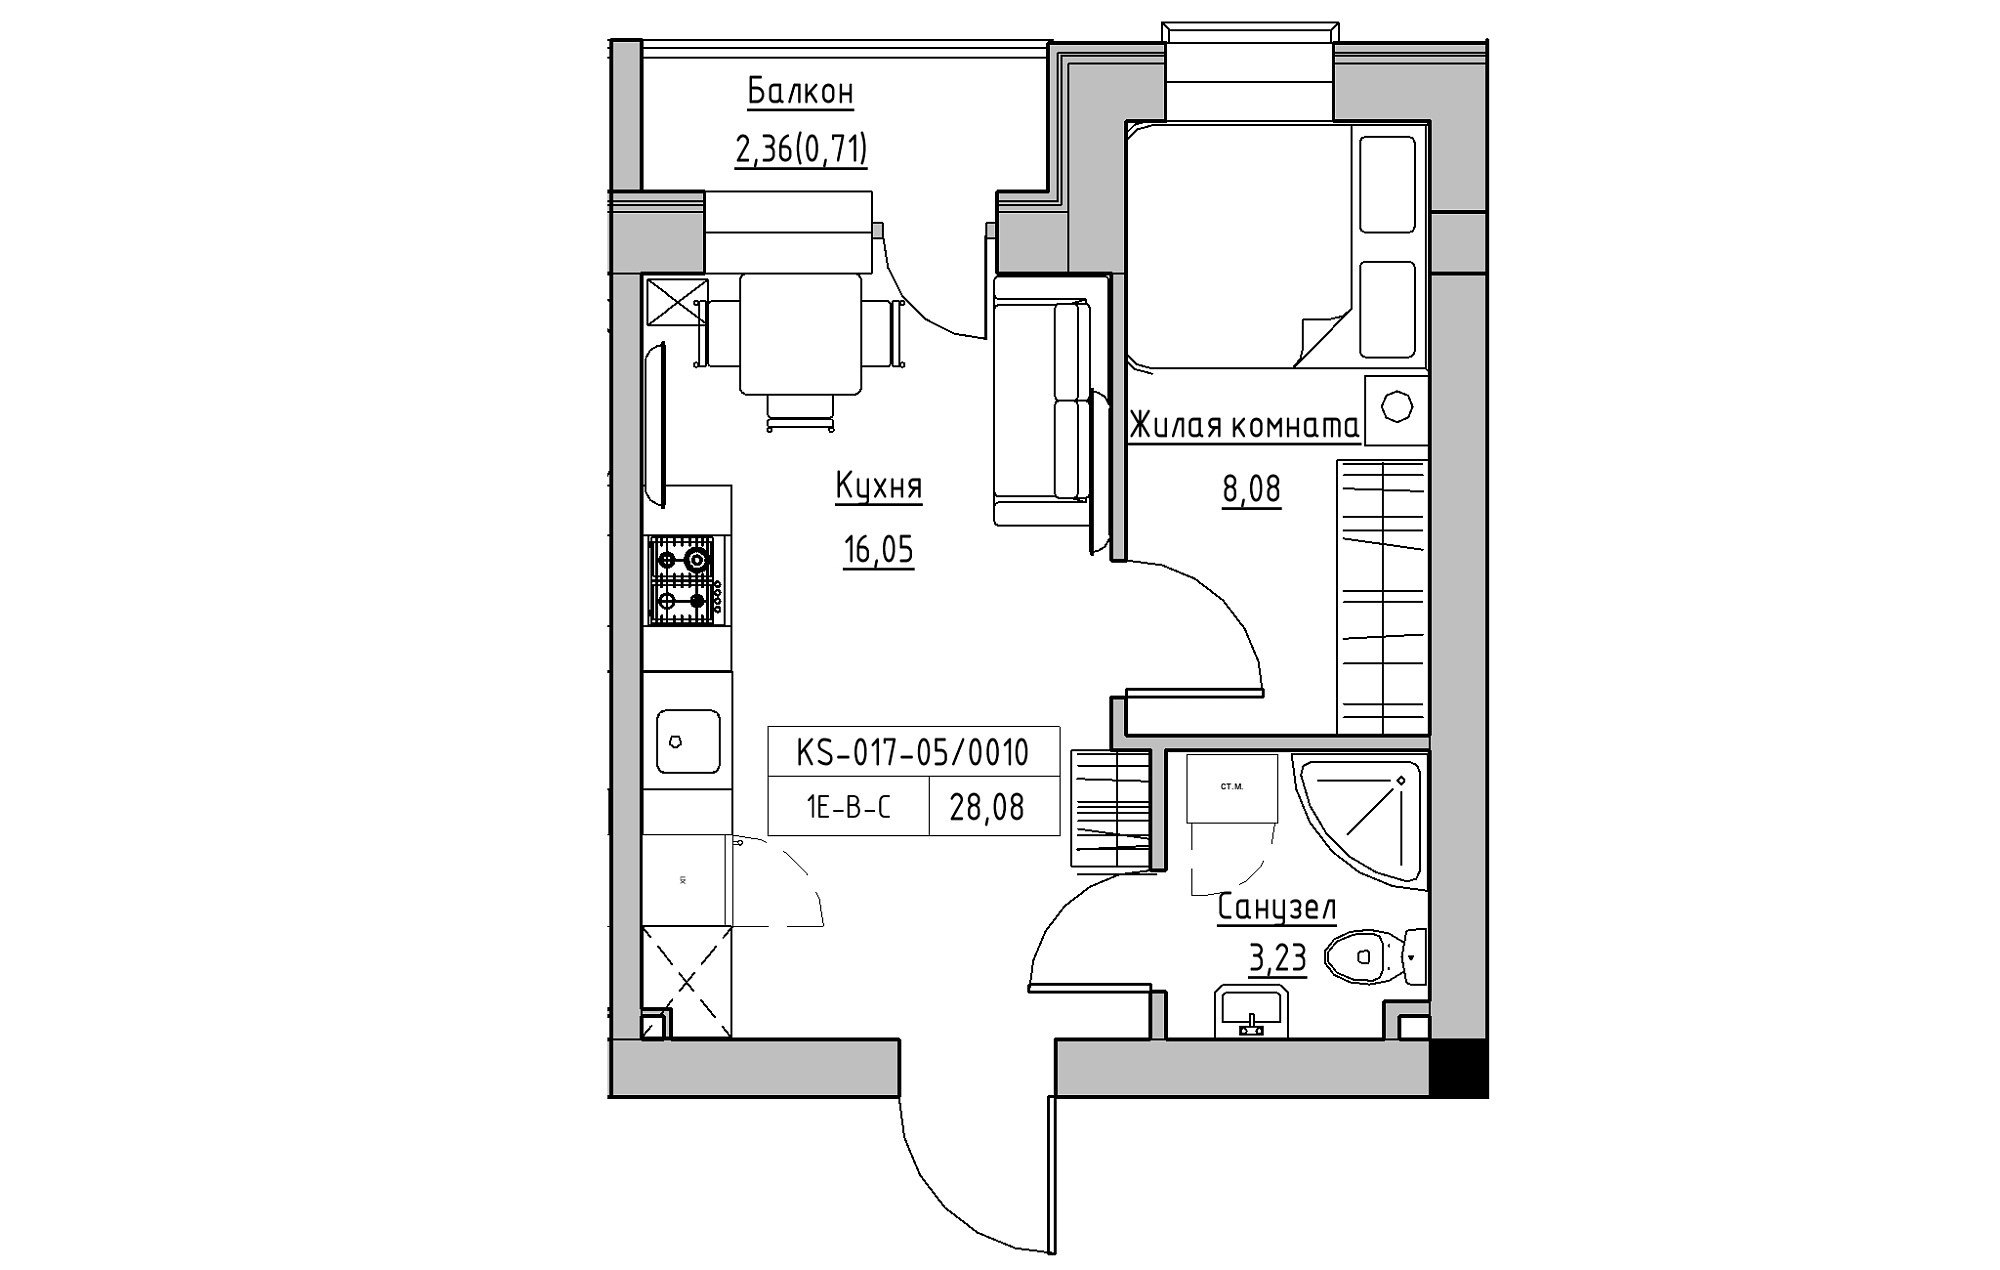 Планировка 1-к квартира площей 28.08м2, KS-017-05/0010.